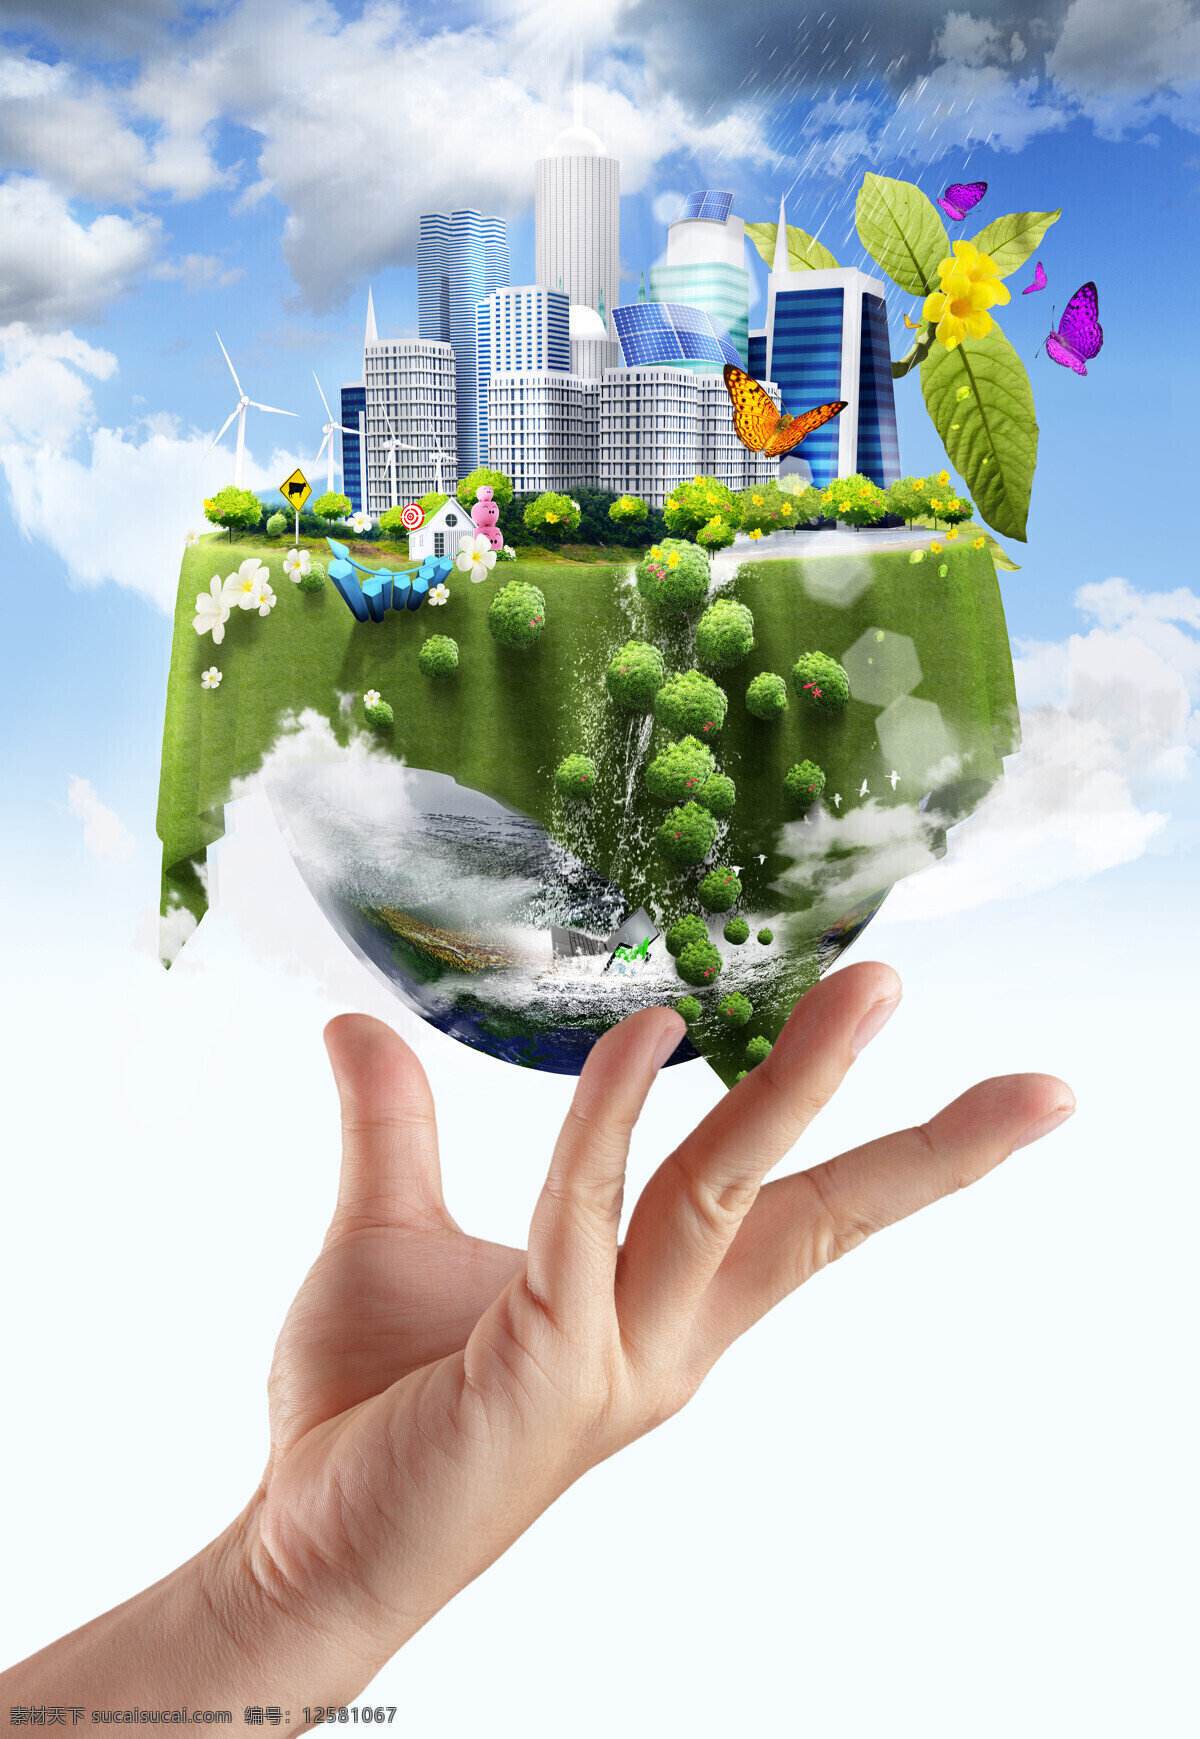 手 托 地球 上 城市 建筑 地球表面 手臂 花朵 蝴蝶 高楼大厦 城市建筑 保护地球 绿色环保 生态环保 节能环保 环保概念 宇宙太空 地球图片 环境家居